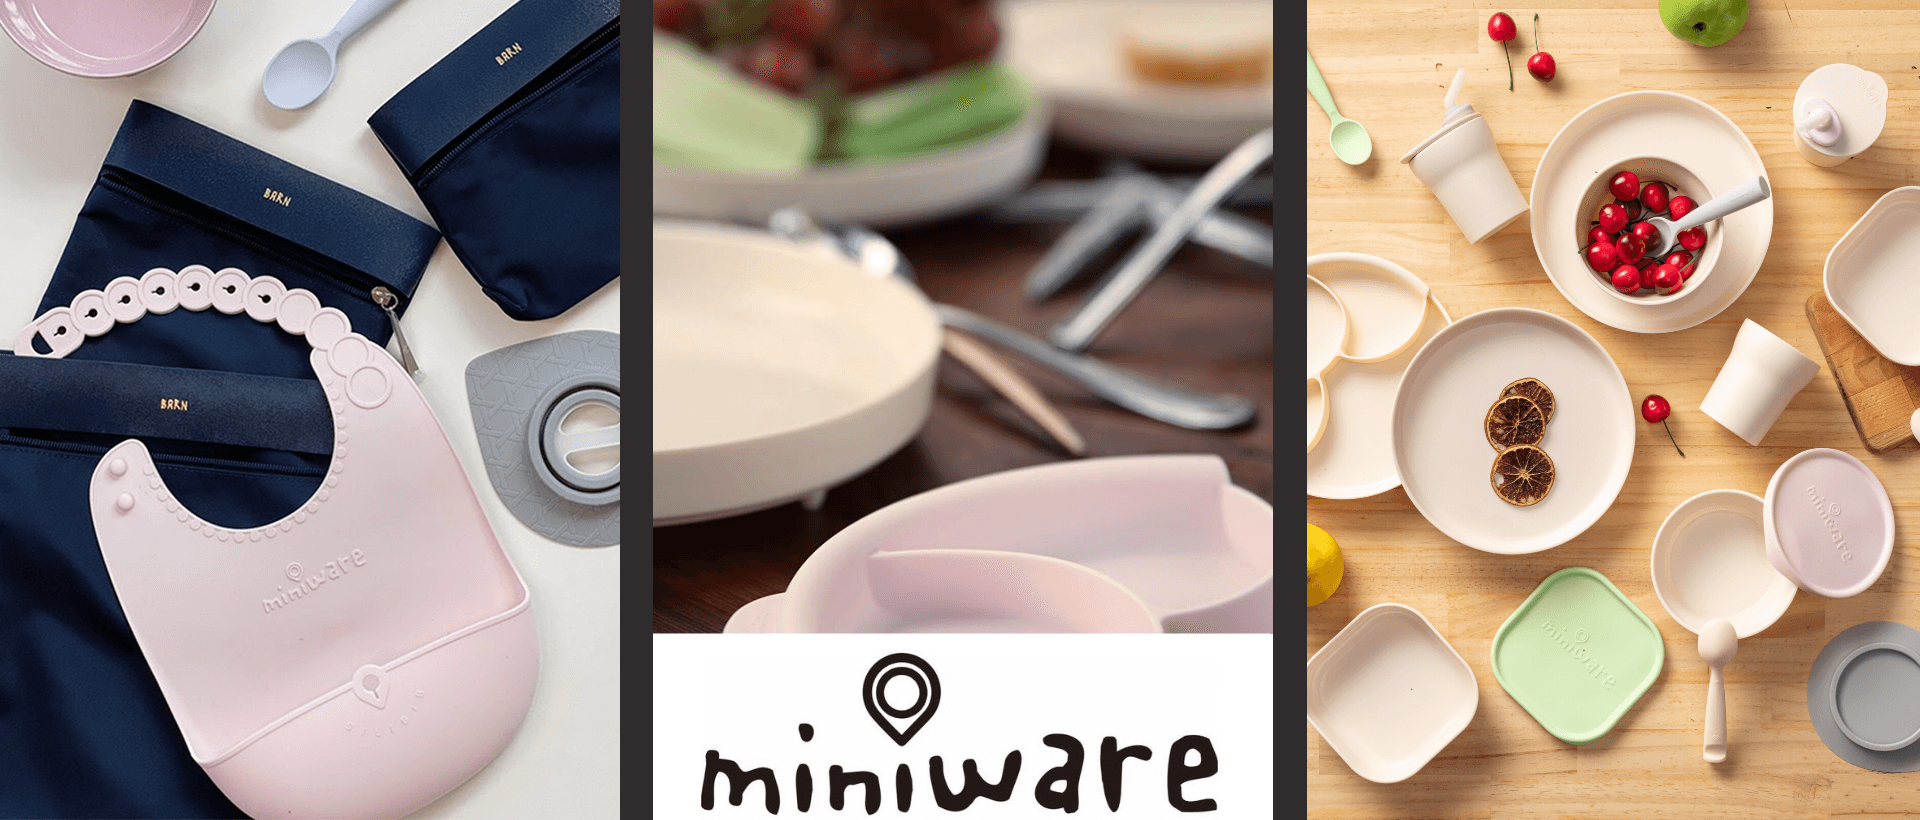 Miniware